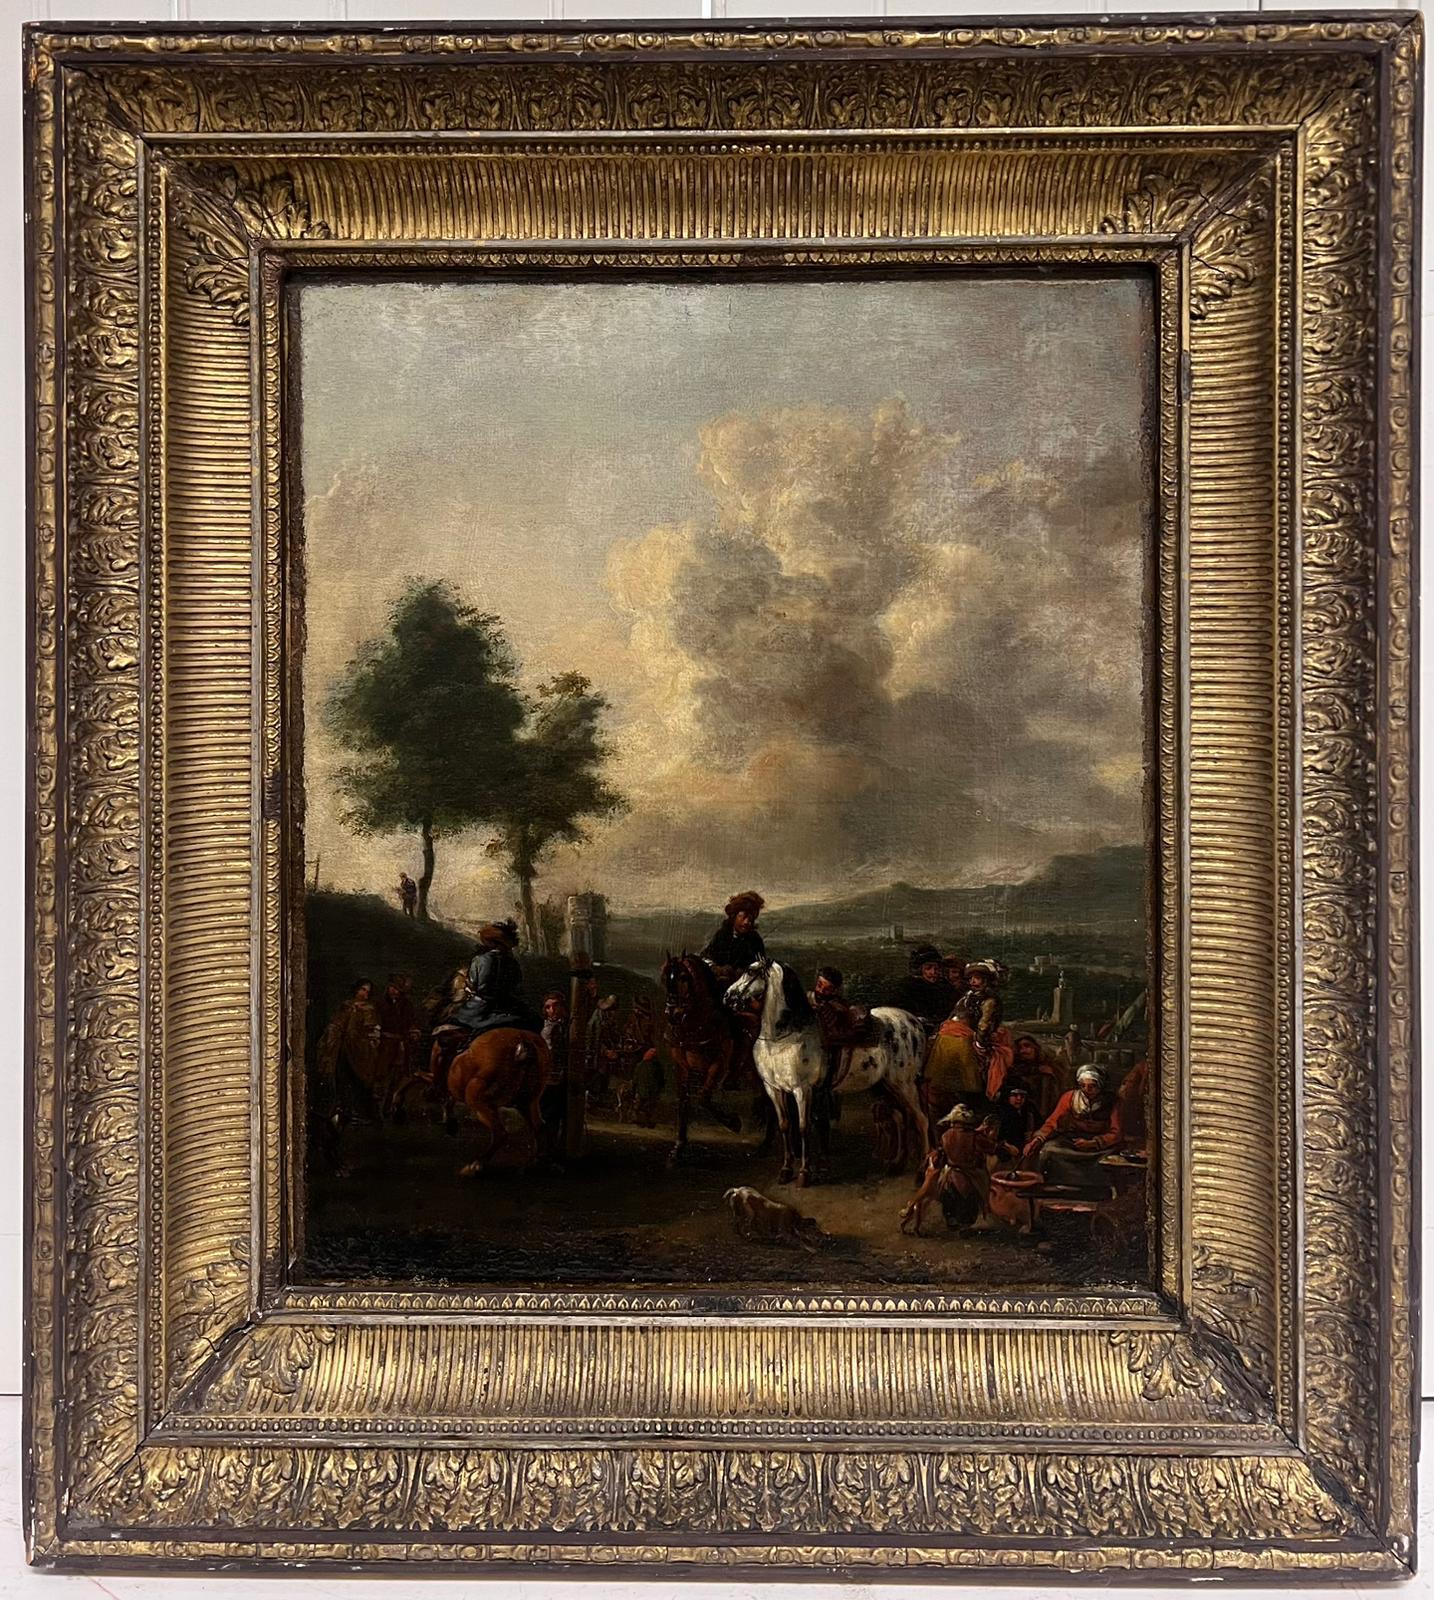 Belle huile de maître hollandaise du 17e siècle représentant des personnages à cheval dans un campement militaire